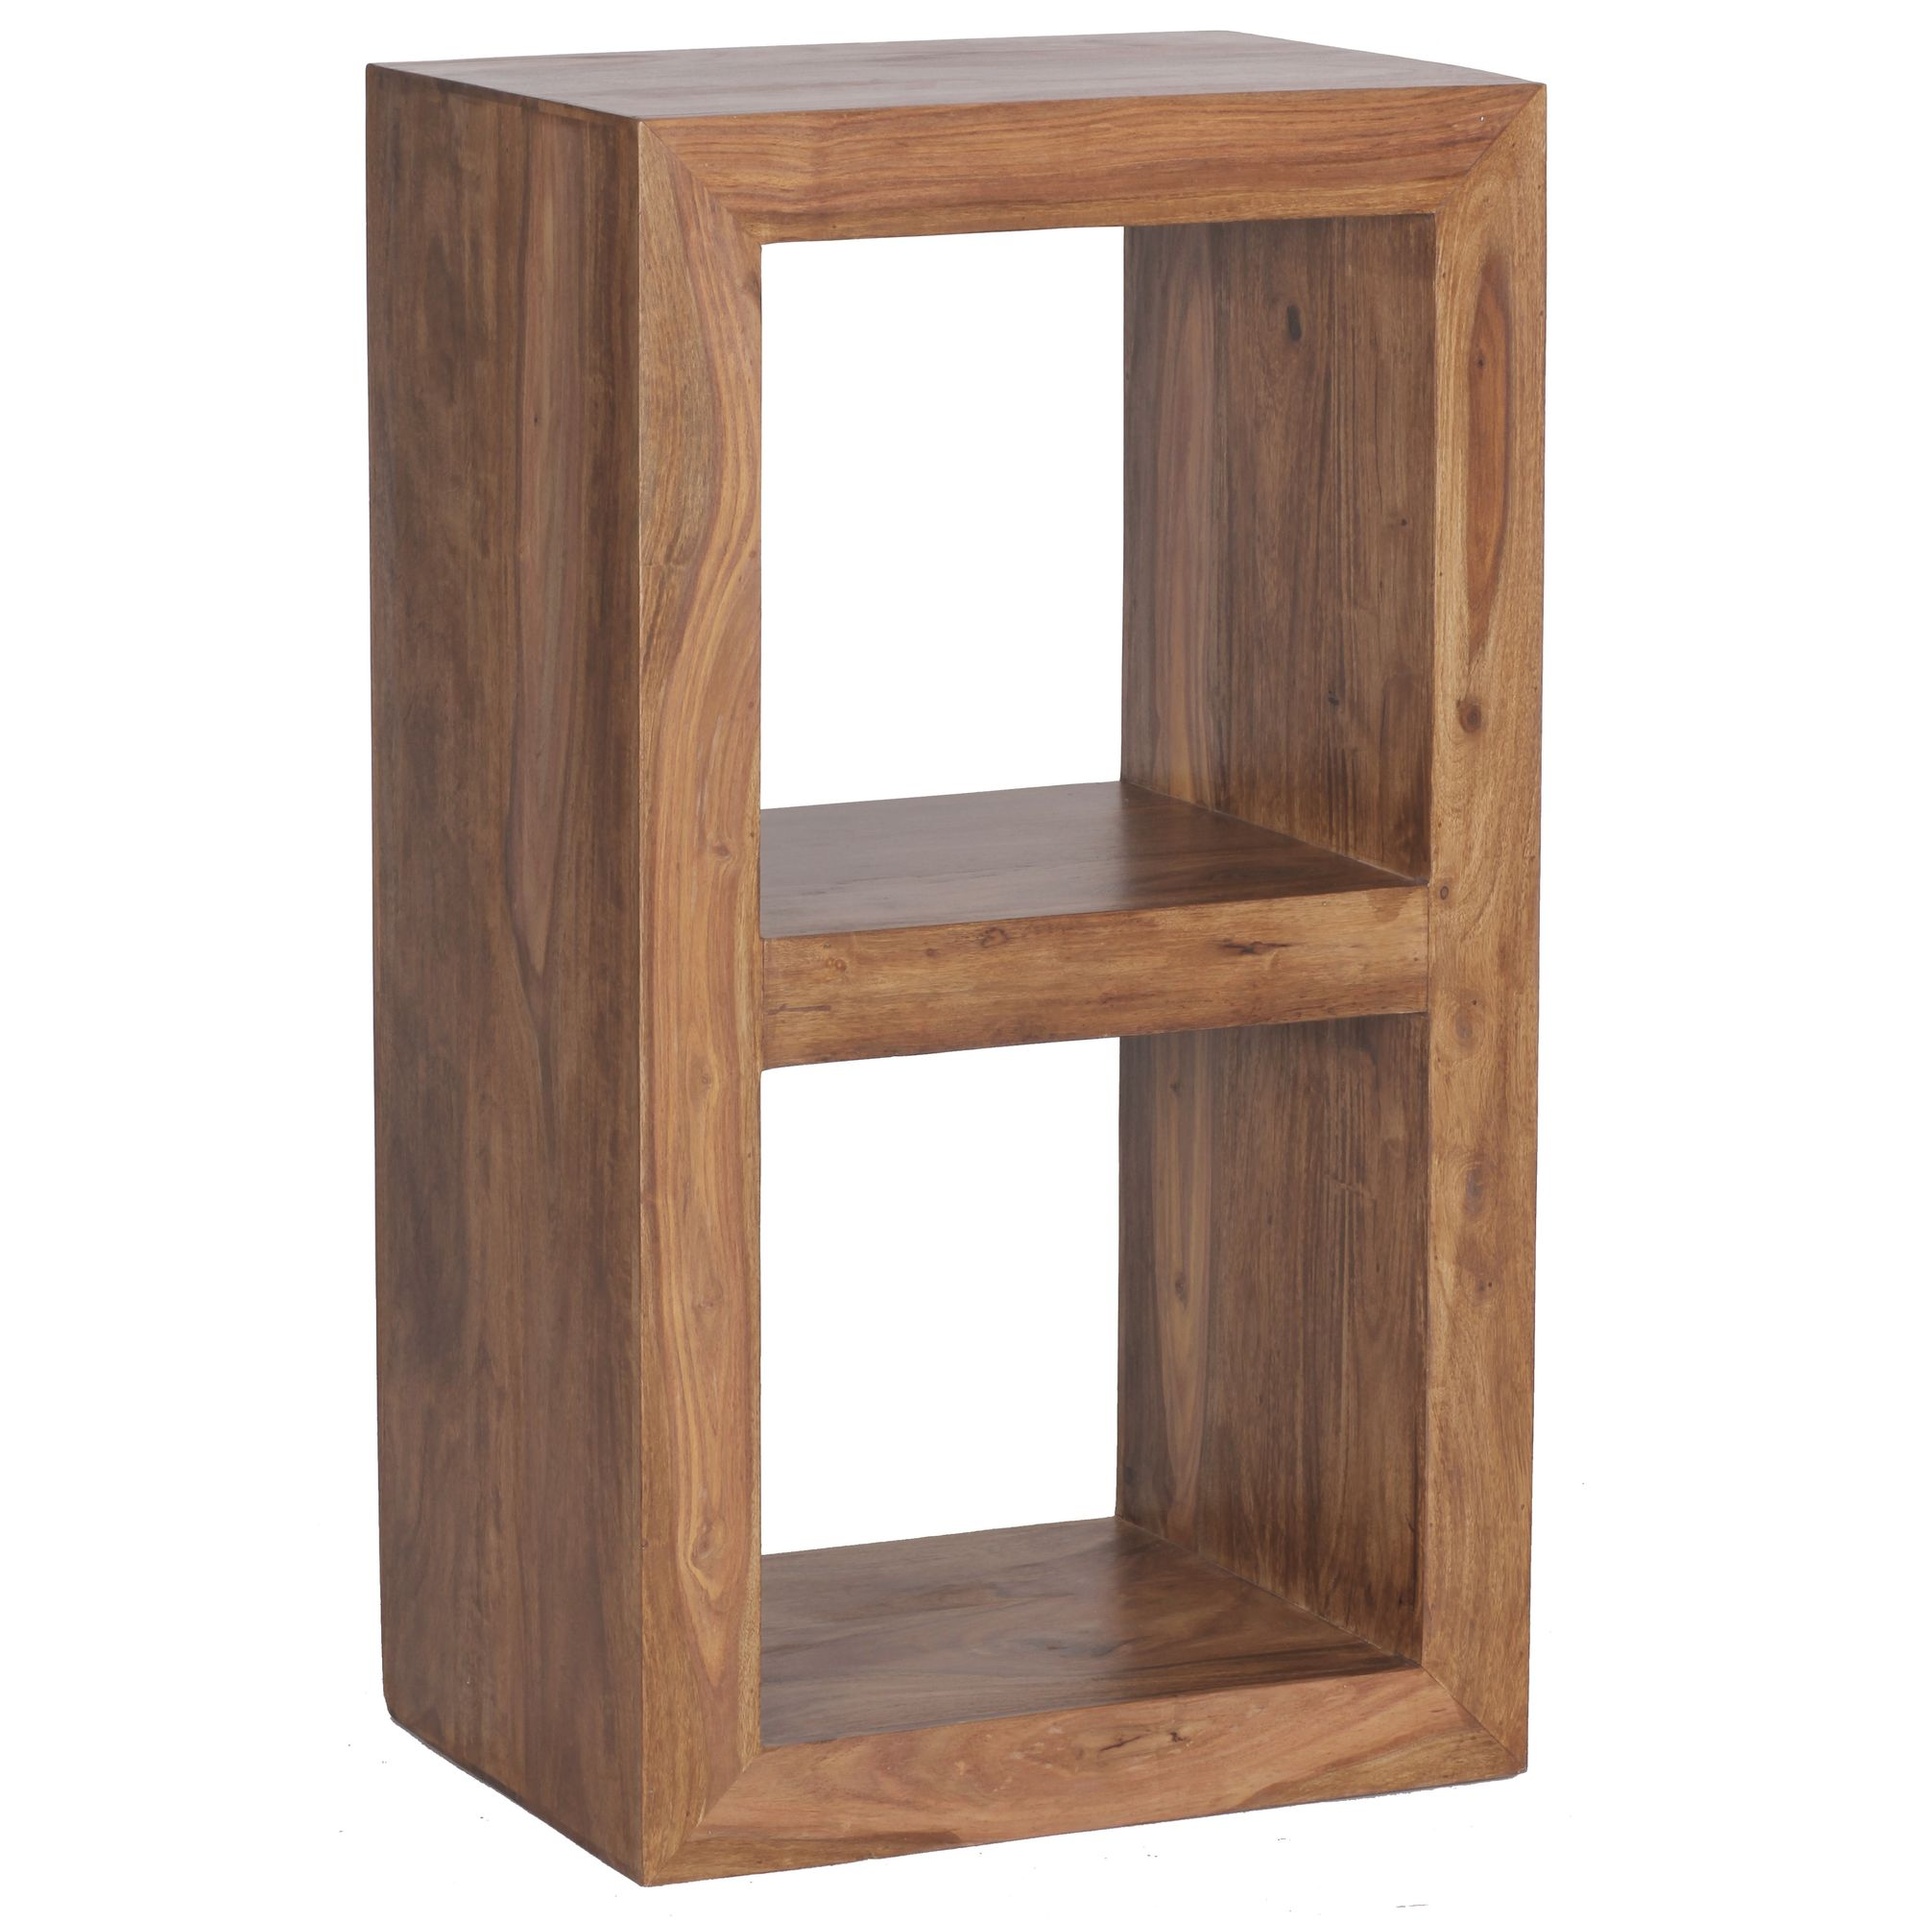 [A09546] Étagère sur pied MUMBAI bois de Sesham massif 88 cm de haut 2 étagères design étagère en bois produit naturel